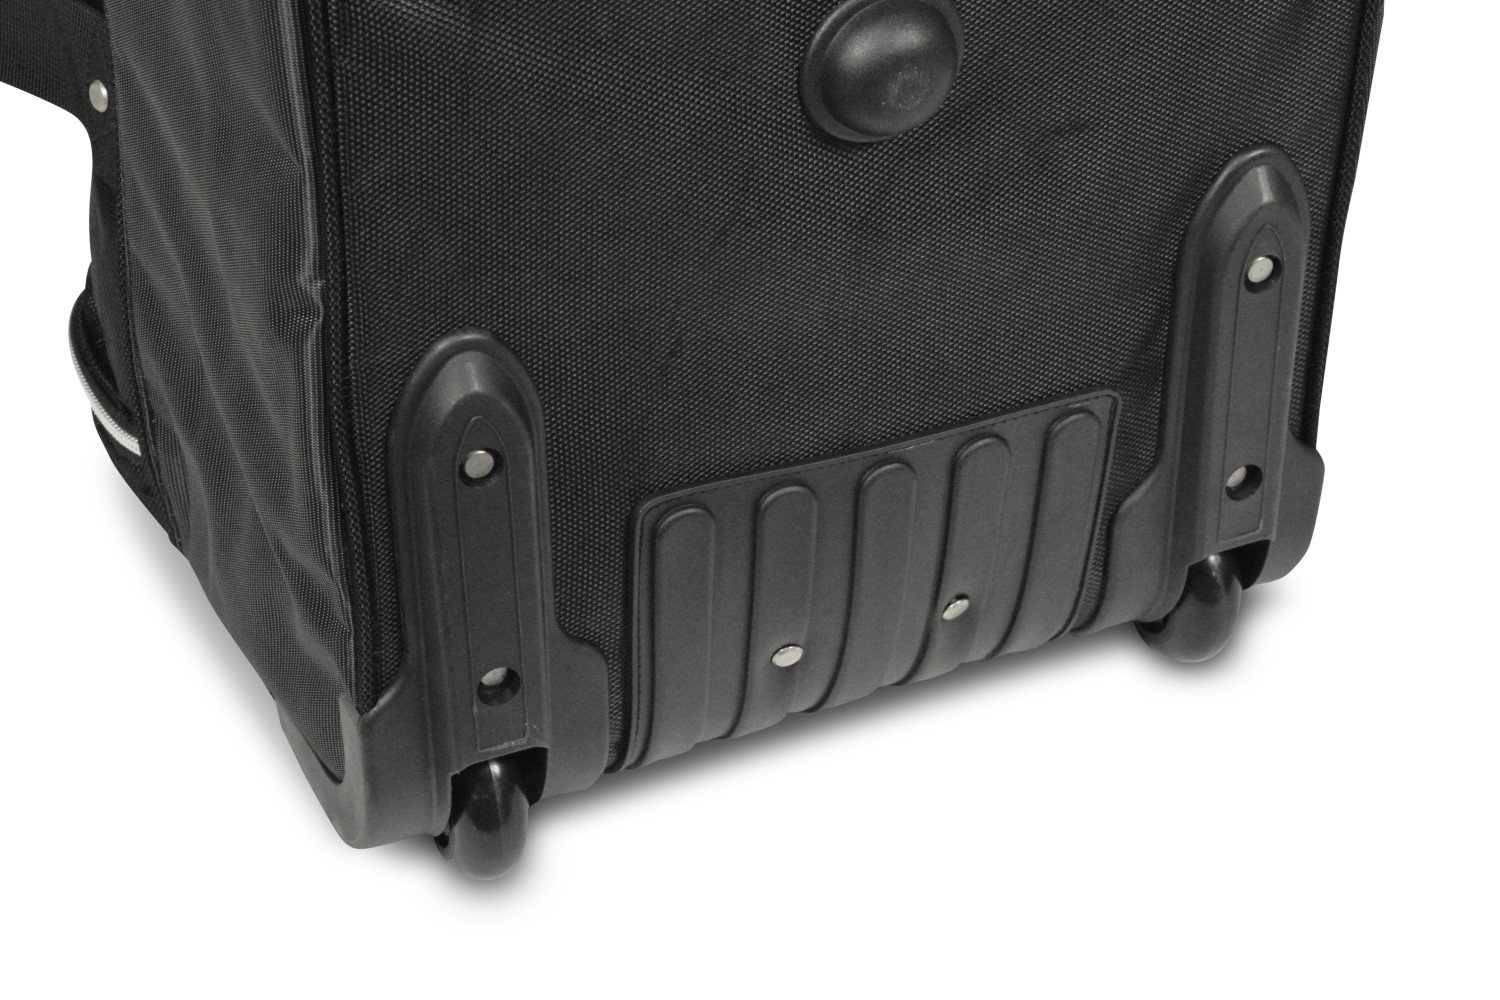 Car Bags Reisetaschen Set für Porsche Panamera (970) - Maluch Premium  Autozubehör